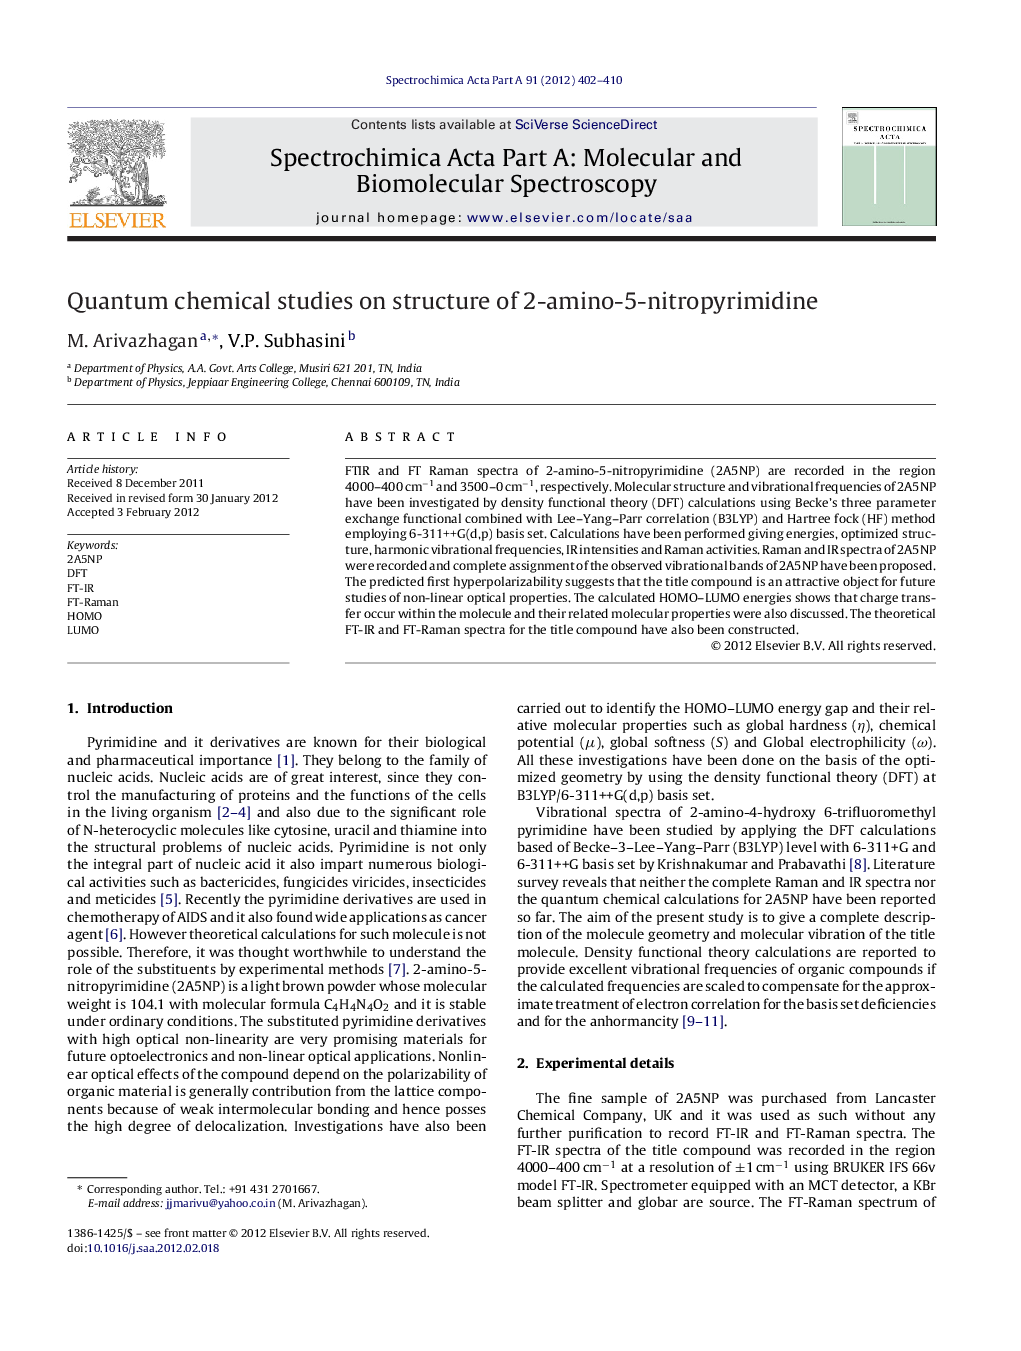 Quantum chemical studies on structure of 2-amino-5-nitropyrimidine